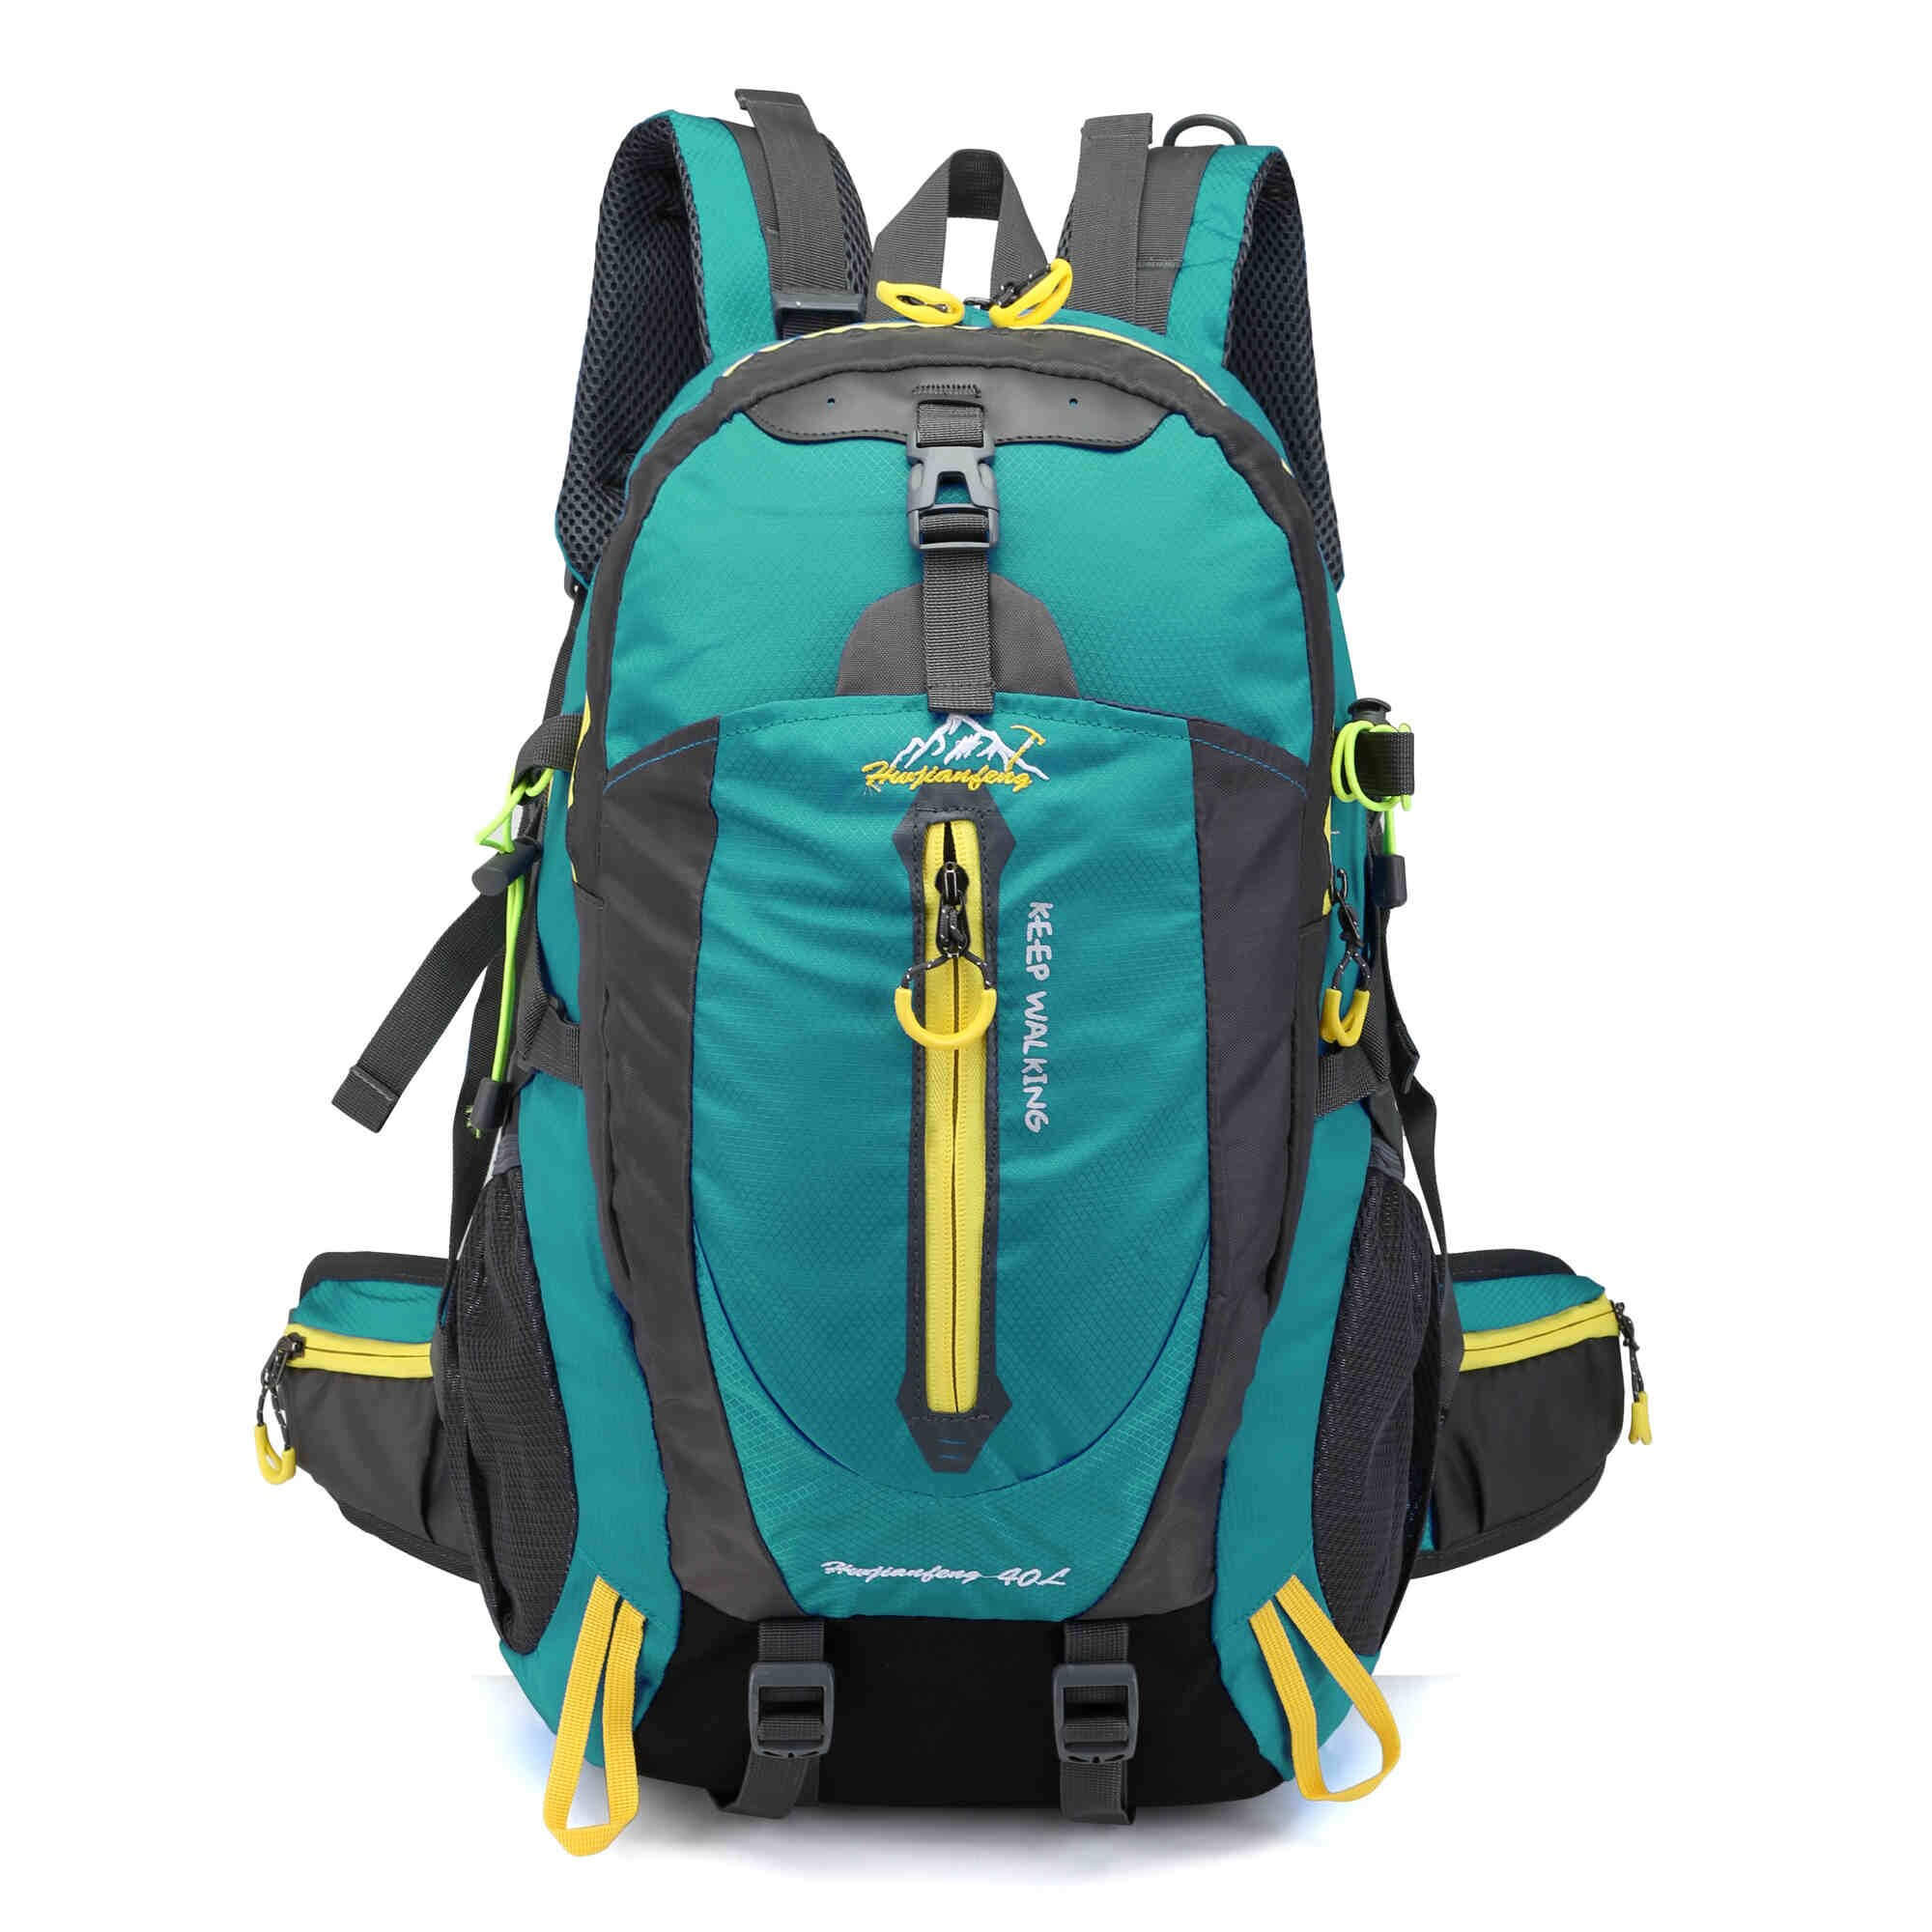 FOOTHILLS - Hiking Backpack 35L